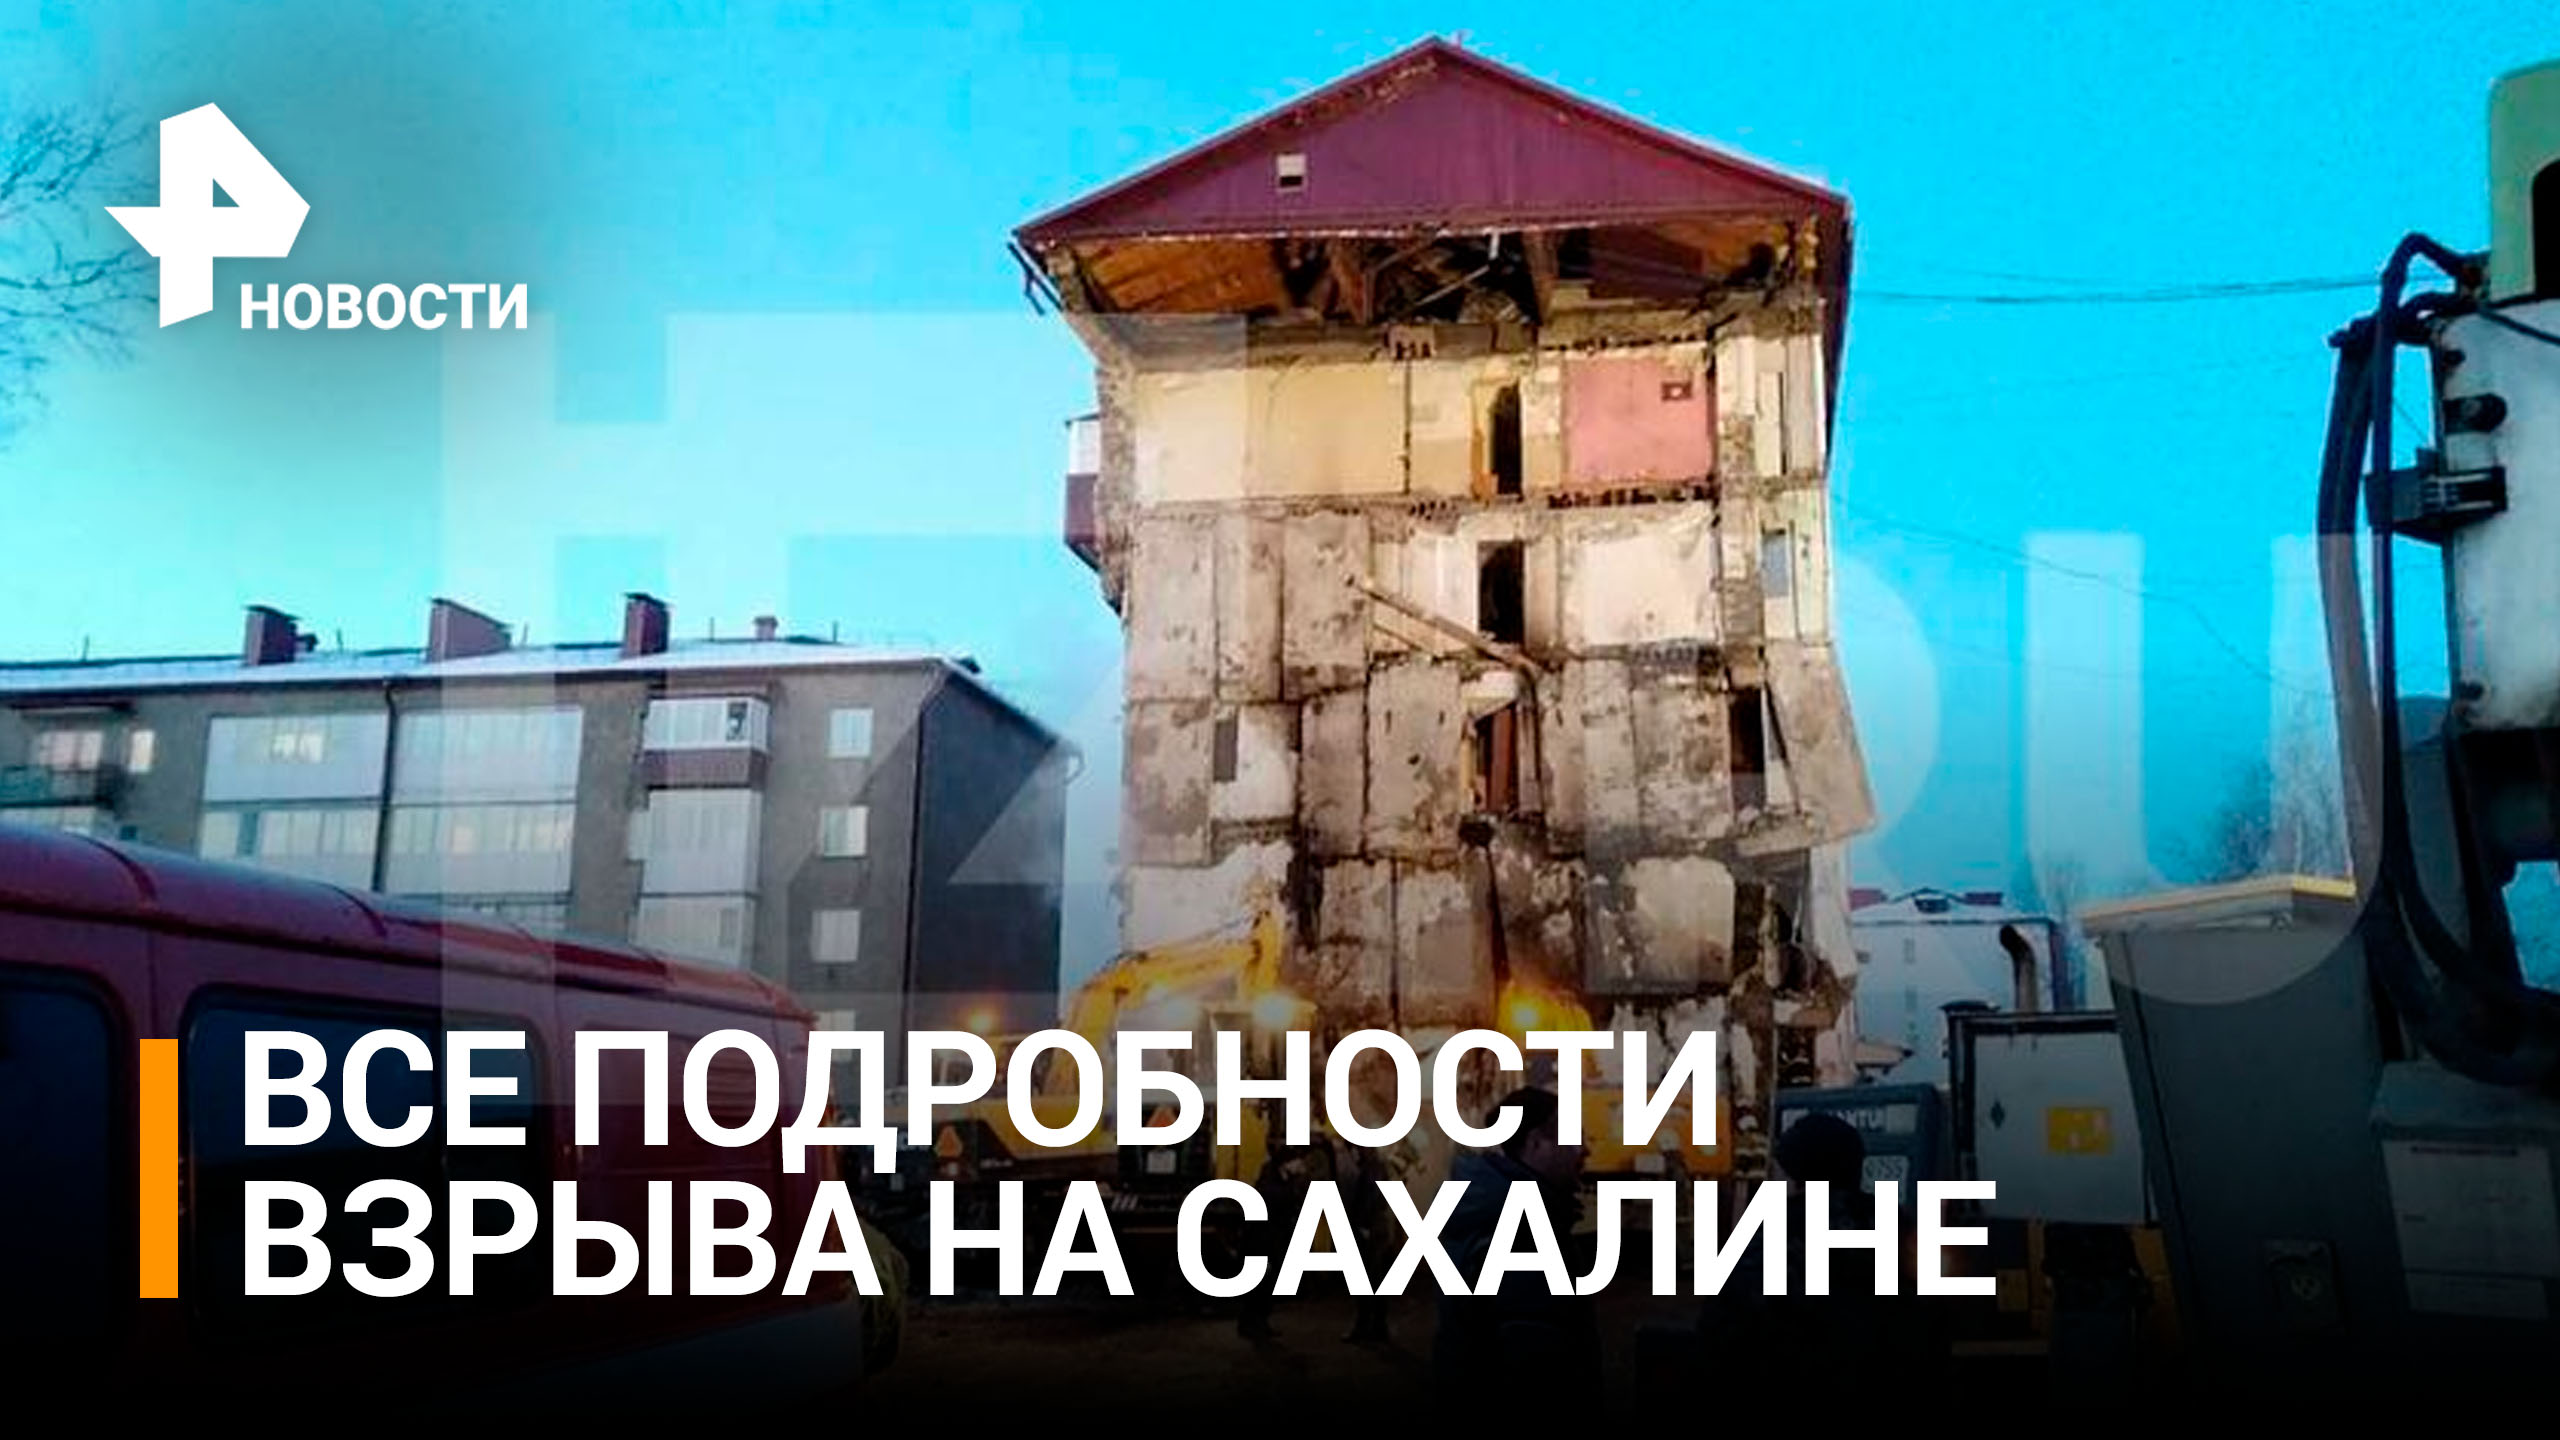 Четыре ребенка погибли при взрыве газа в доме на Сахалине / РЕН Новости